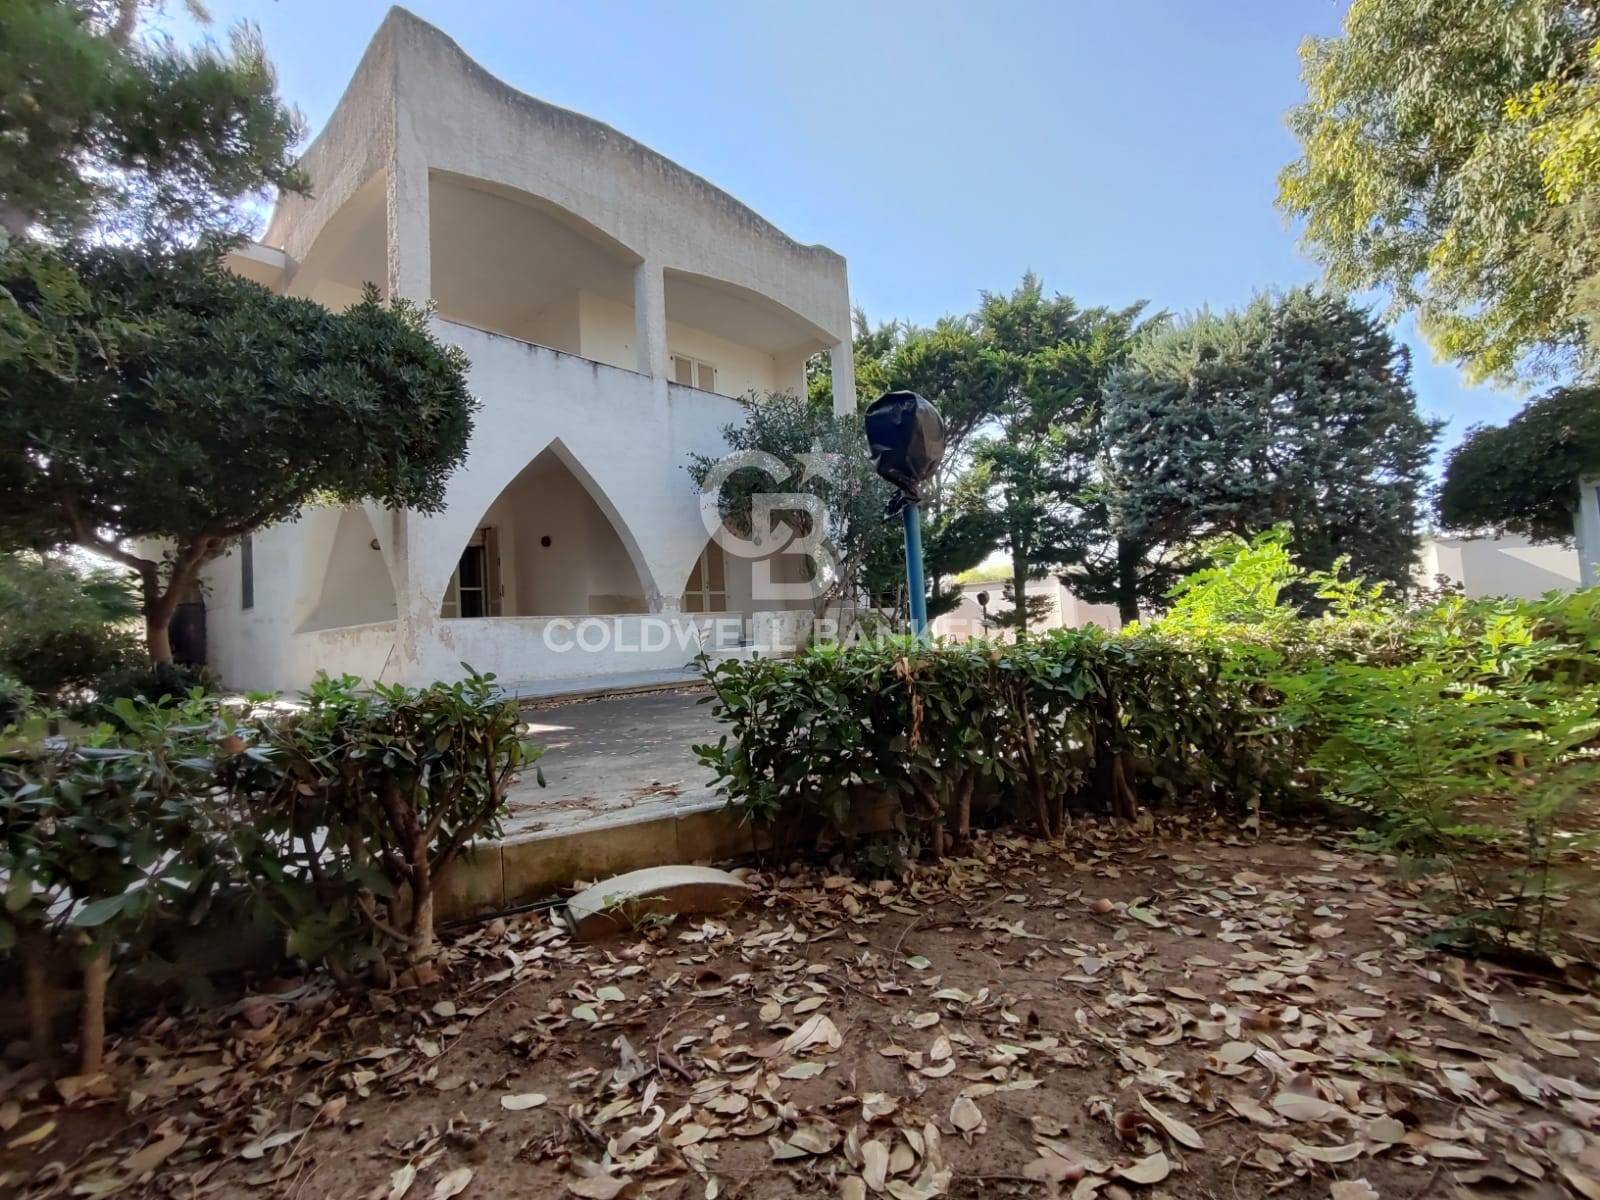 Villa in vendita a Torchiarolo, 8 locali, zona inuso, prezzo € 215.000 | PortaleAgenzieImmobiliari.it